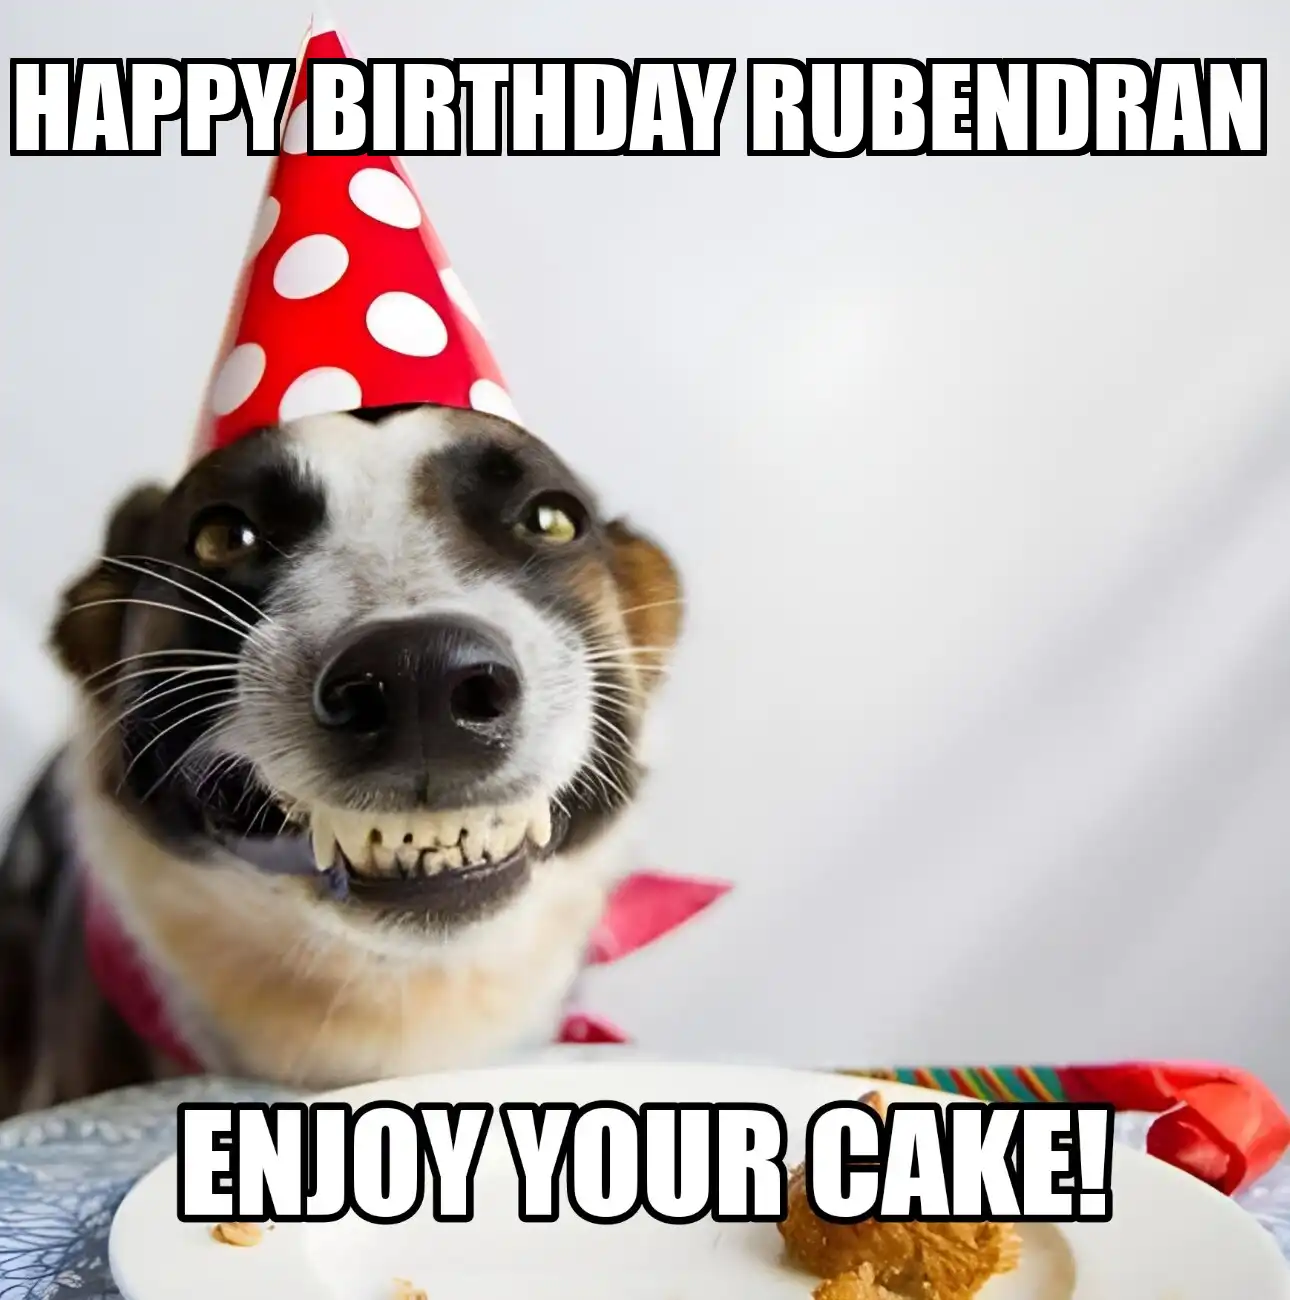 Happy Birthday Rubendran Enjoy Your Cake Dog Meme